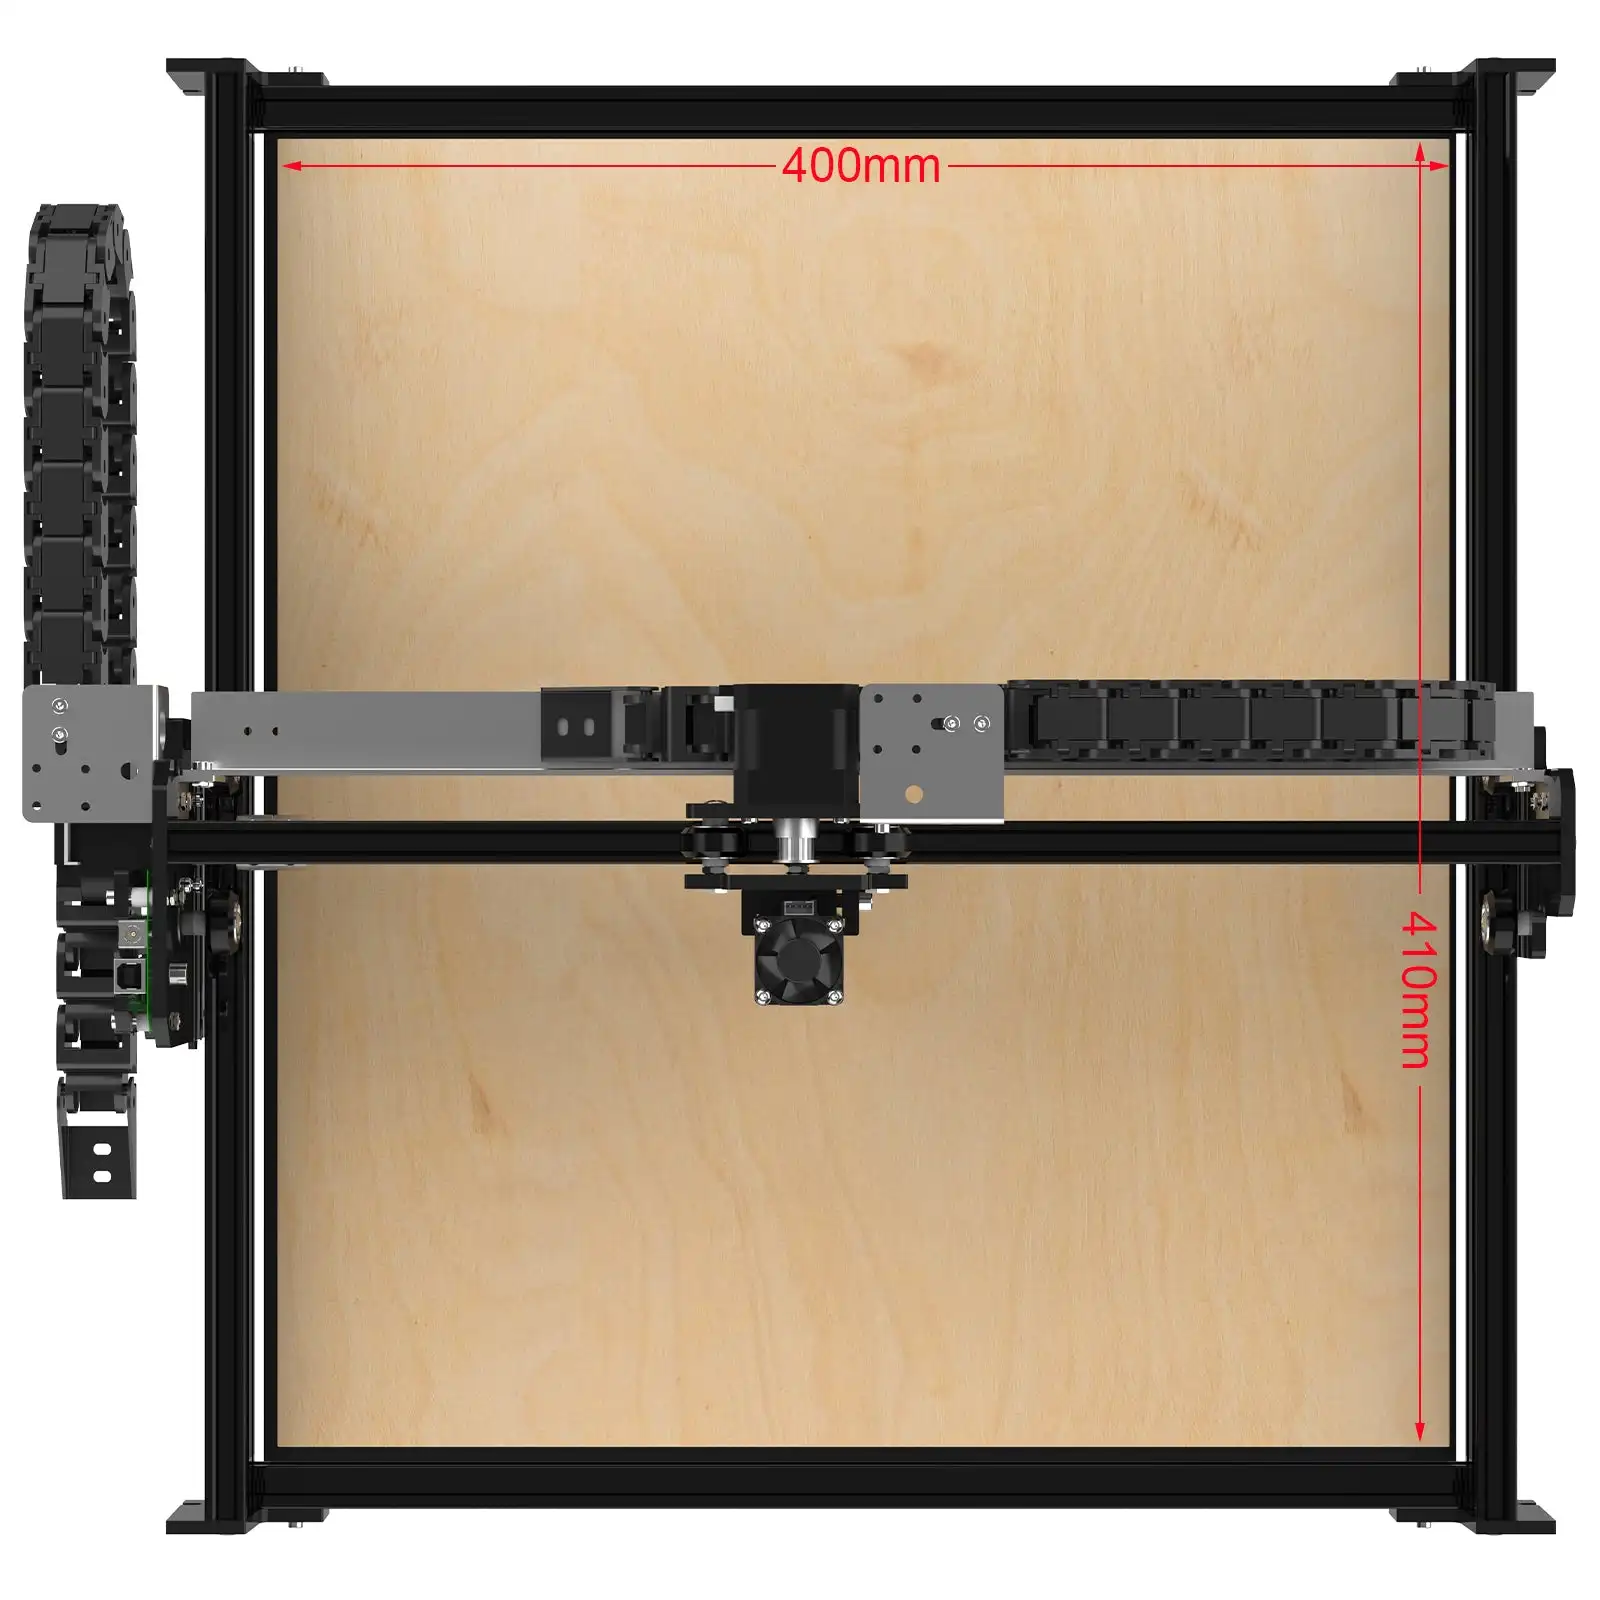 2022 NEW NEJE 3 PRO CNC Laser Engraver Cutting Machine 400*410mm 32-Bit Motherboard Laser Printer CNC Router DIY Wood Mark Steel enlarge